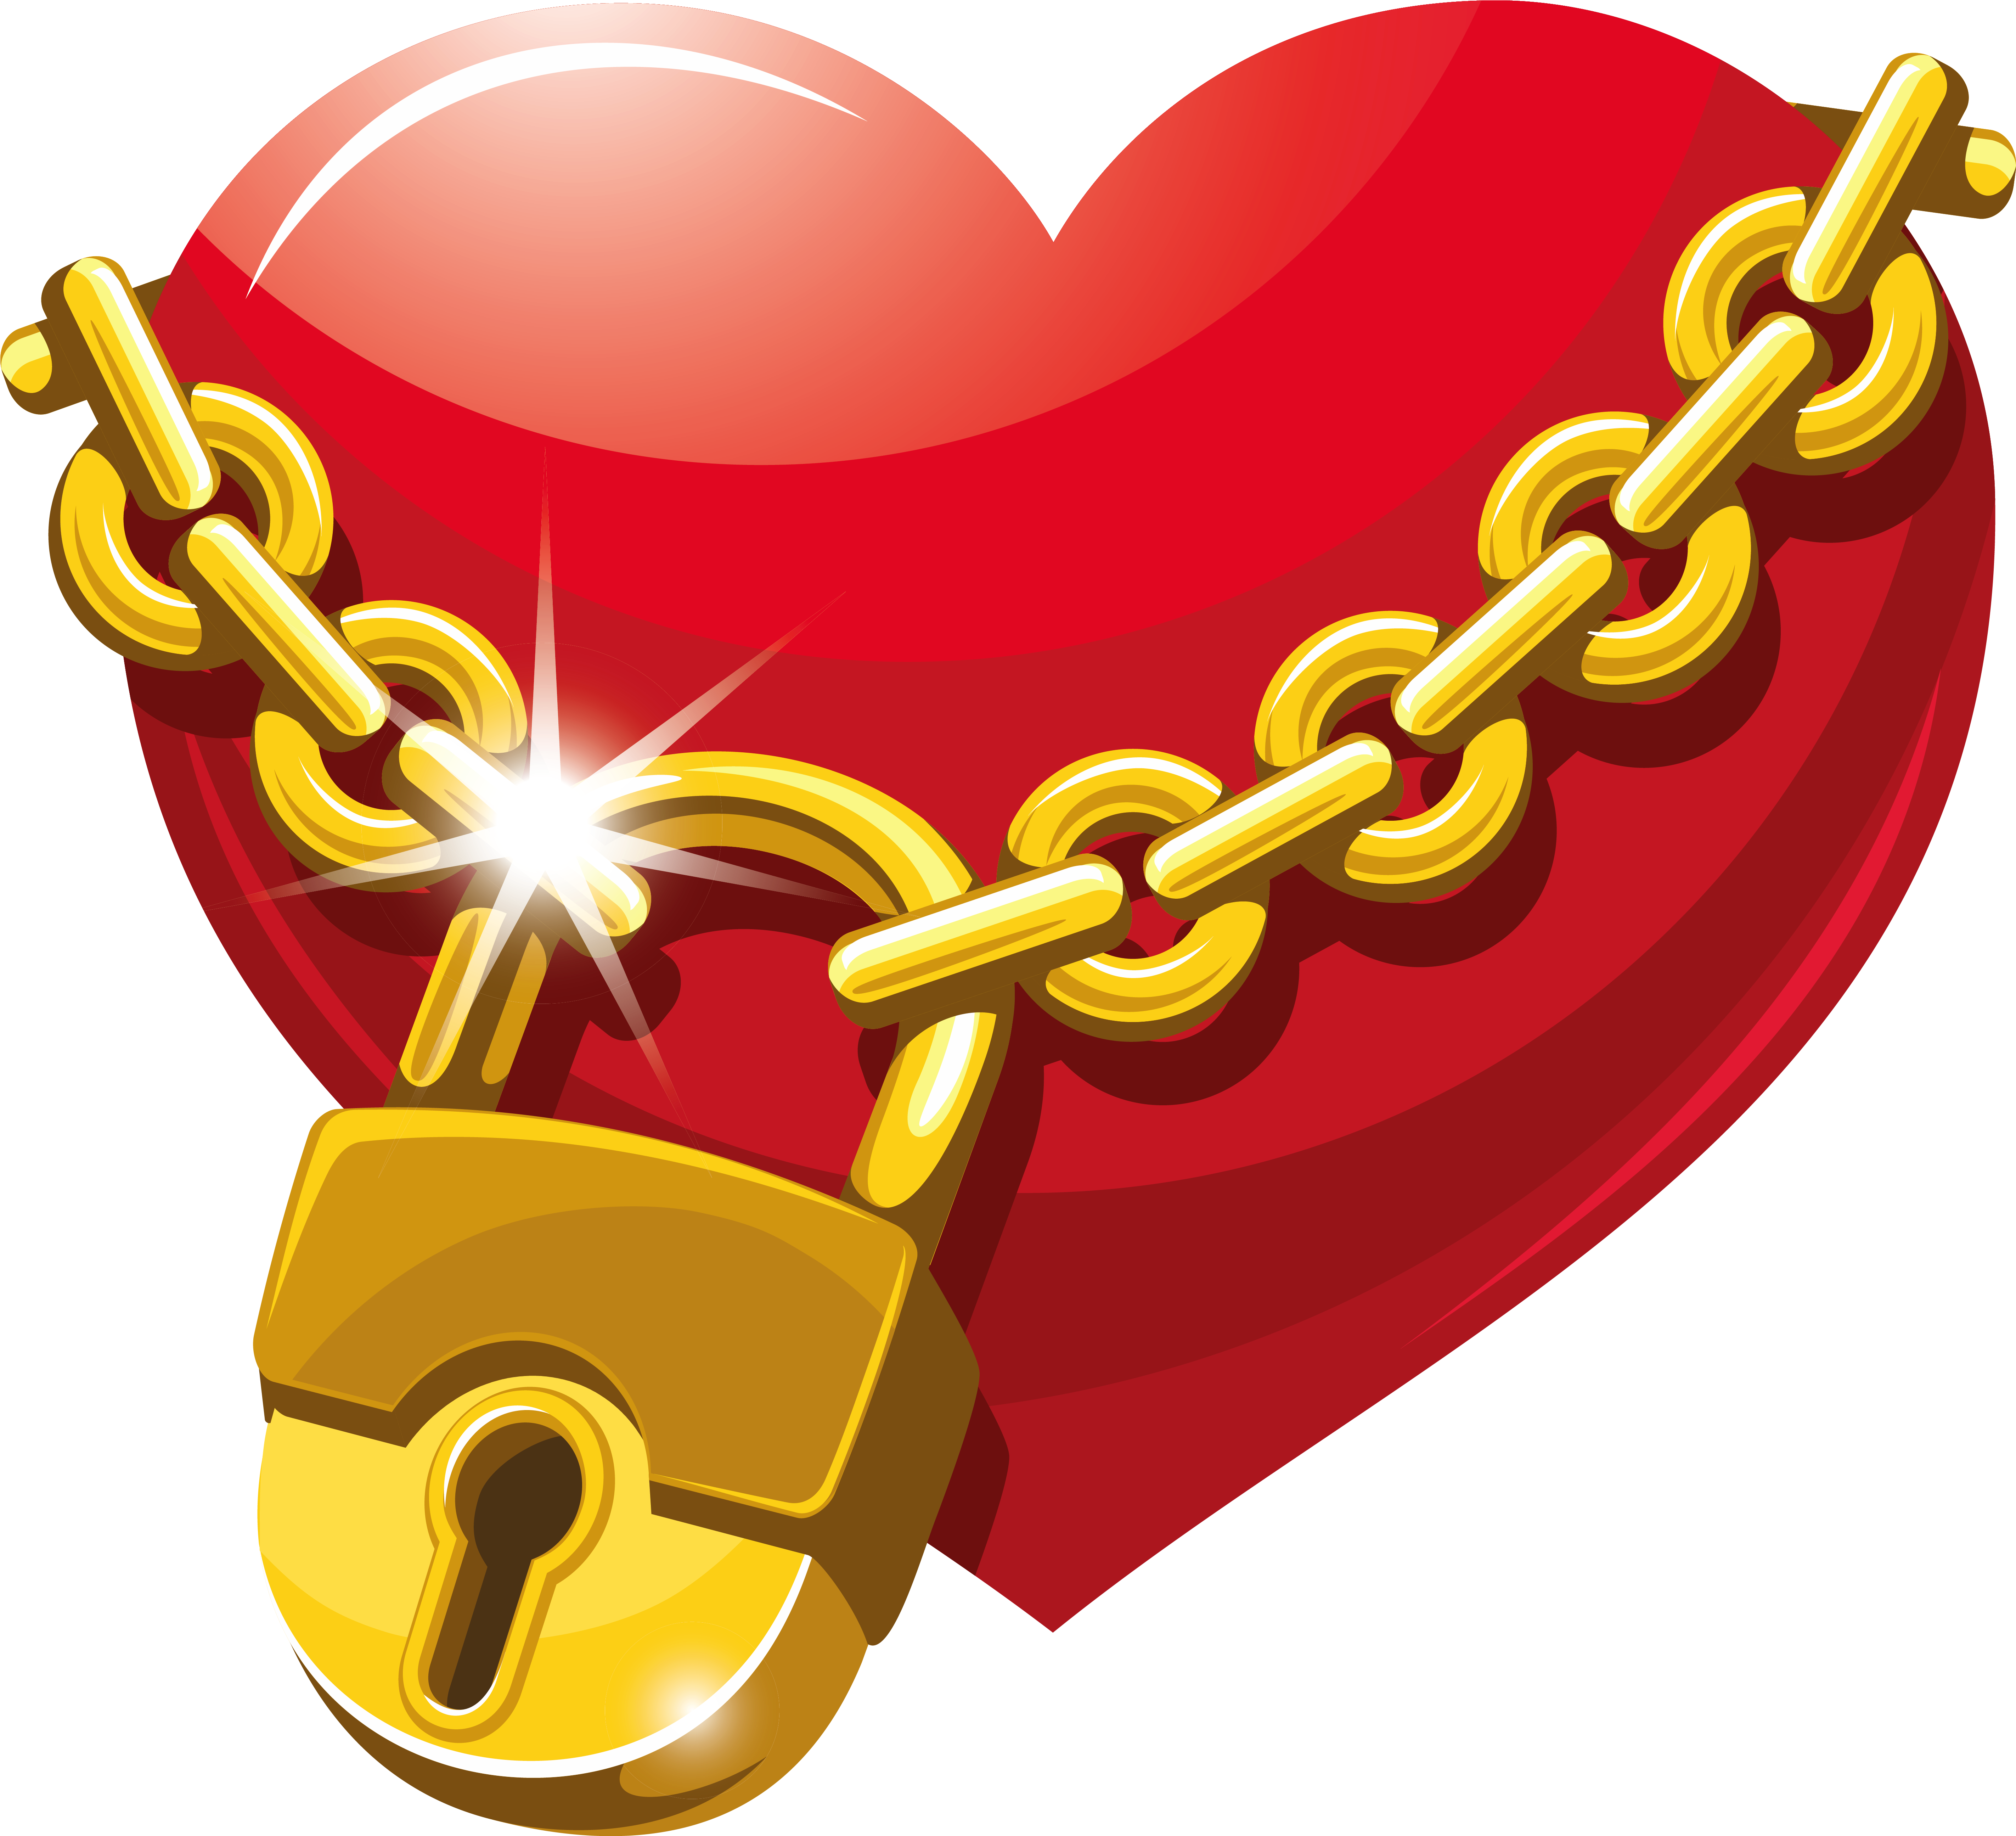 Locked Heart Png Clipart Ñâÿòîãî Âàëåíòèíà Clip Art - Heart With A Lock (5897x5372)